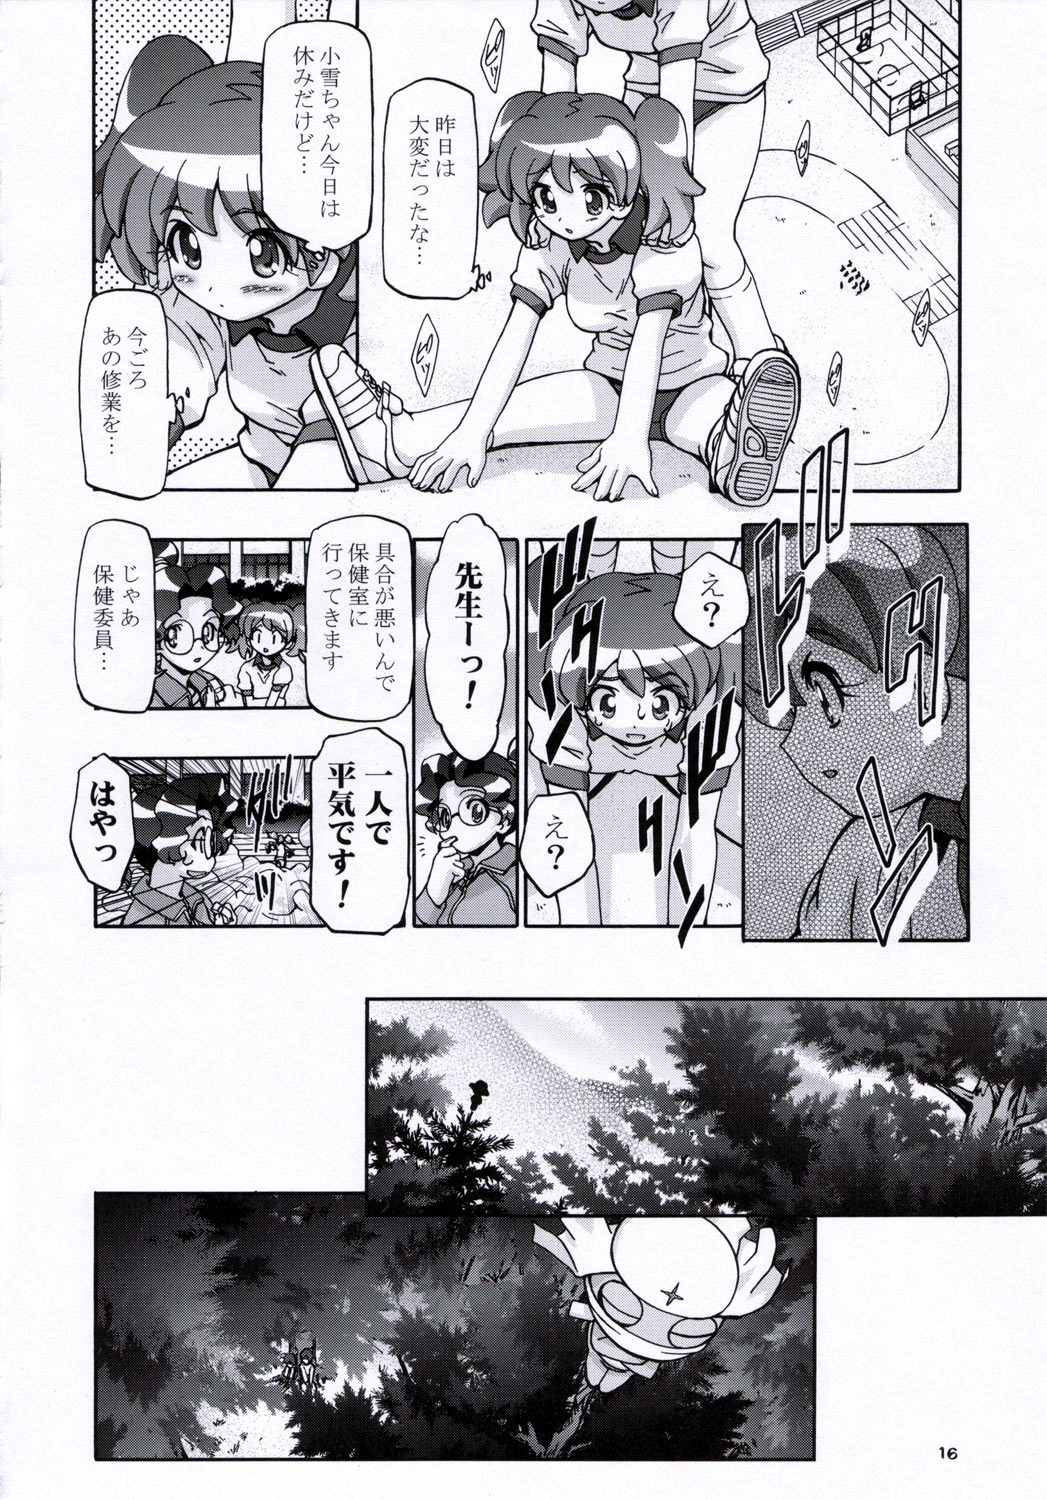 (SC31) [Gambler Club (Kousaka Jun)] Natsu Yuki - Summer Snow (Keroro Gunsou) page 15 full